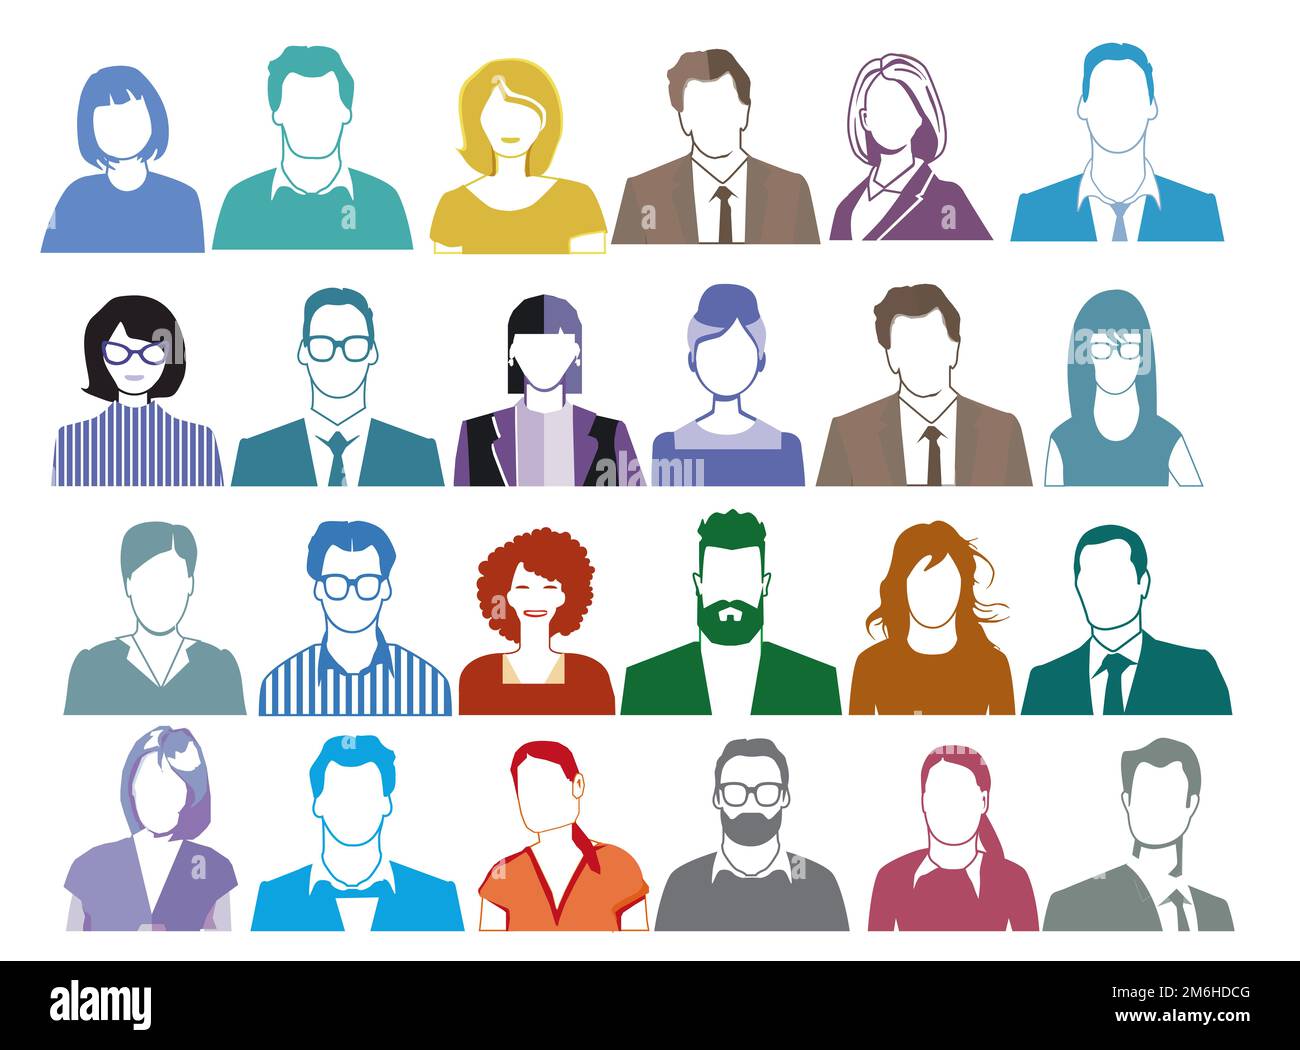 Portrait de groupe de personnes, visages isolés sur fond blanc. Illustration Banque D'Images